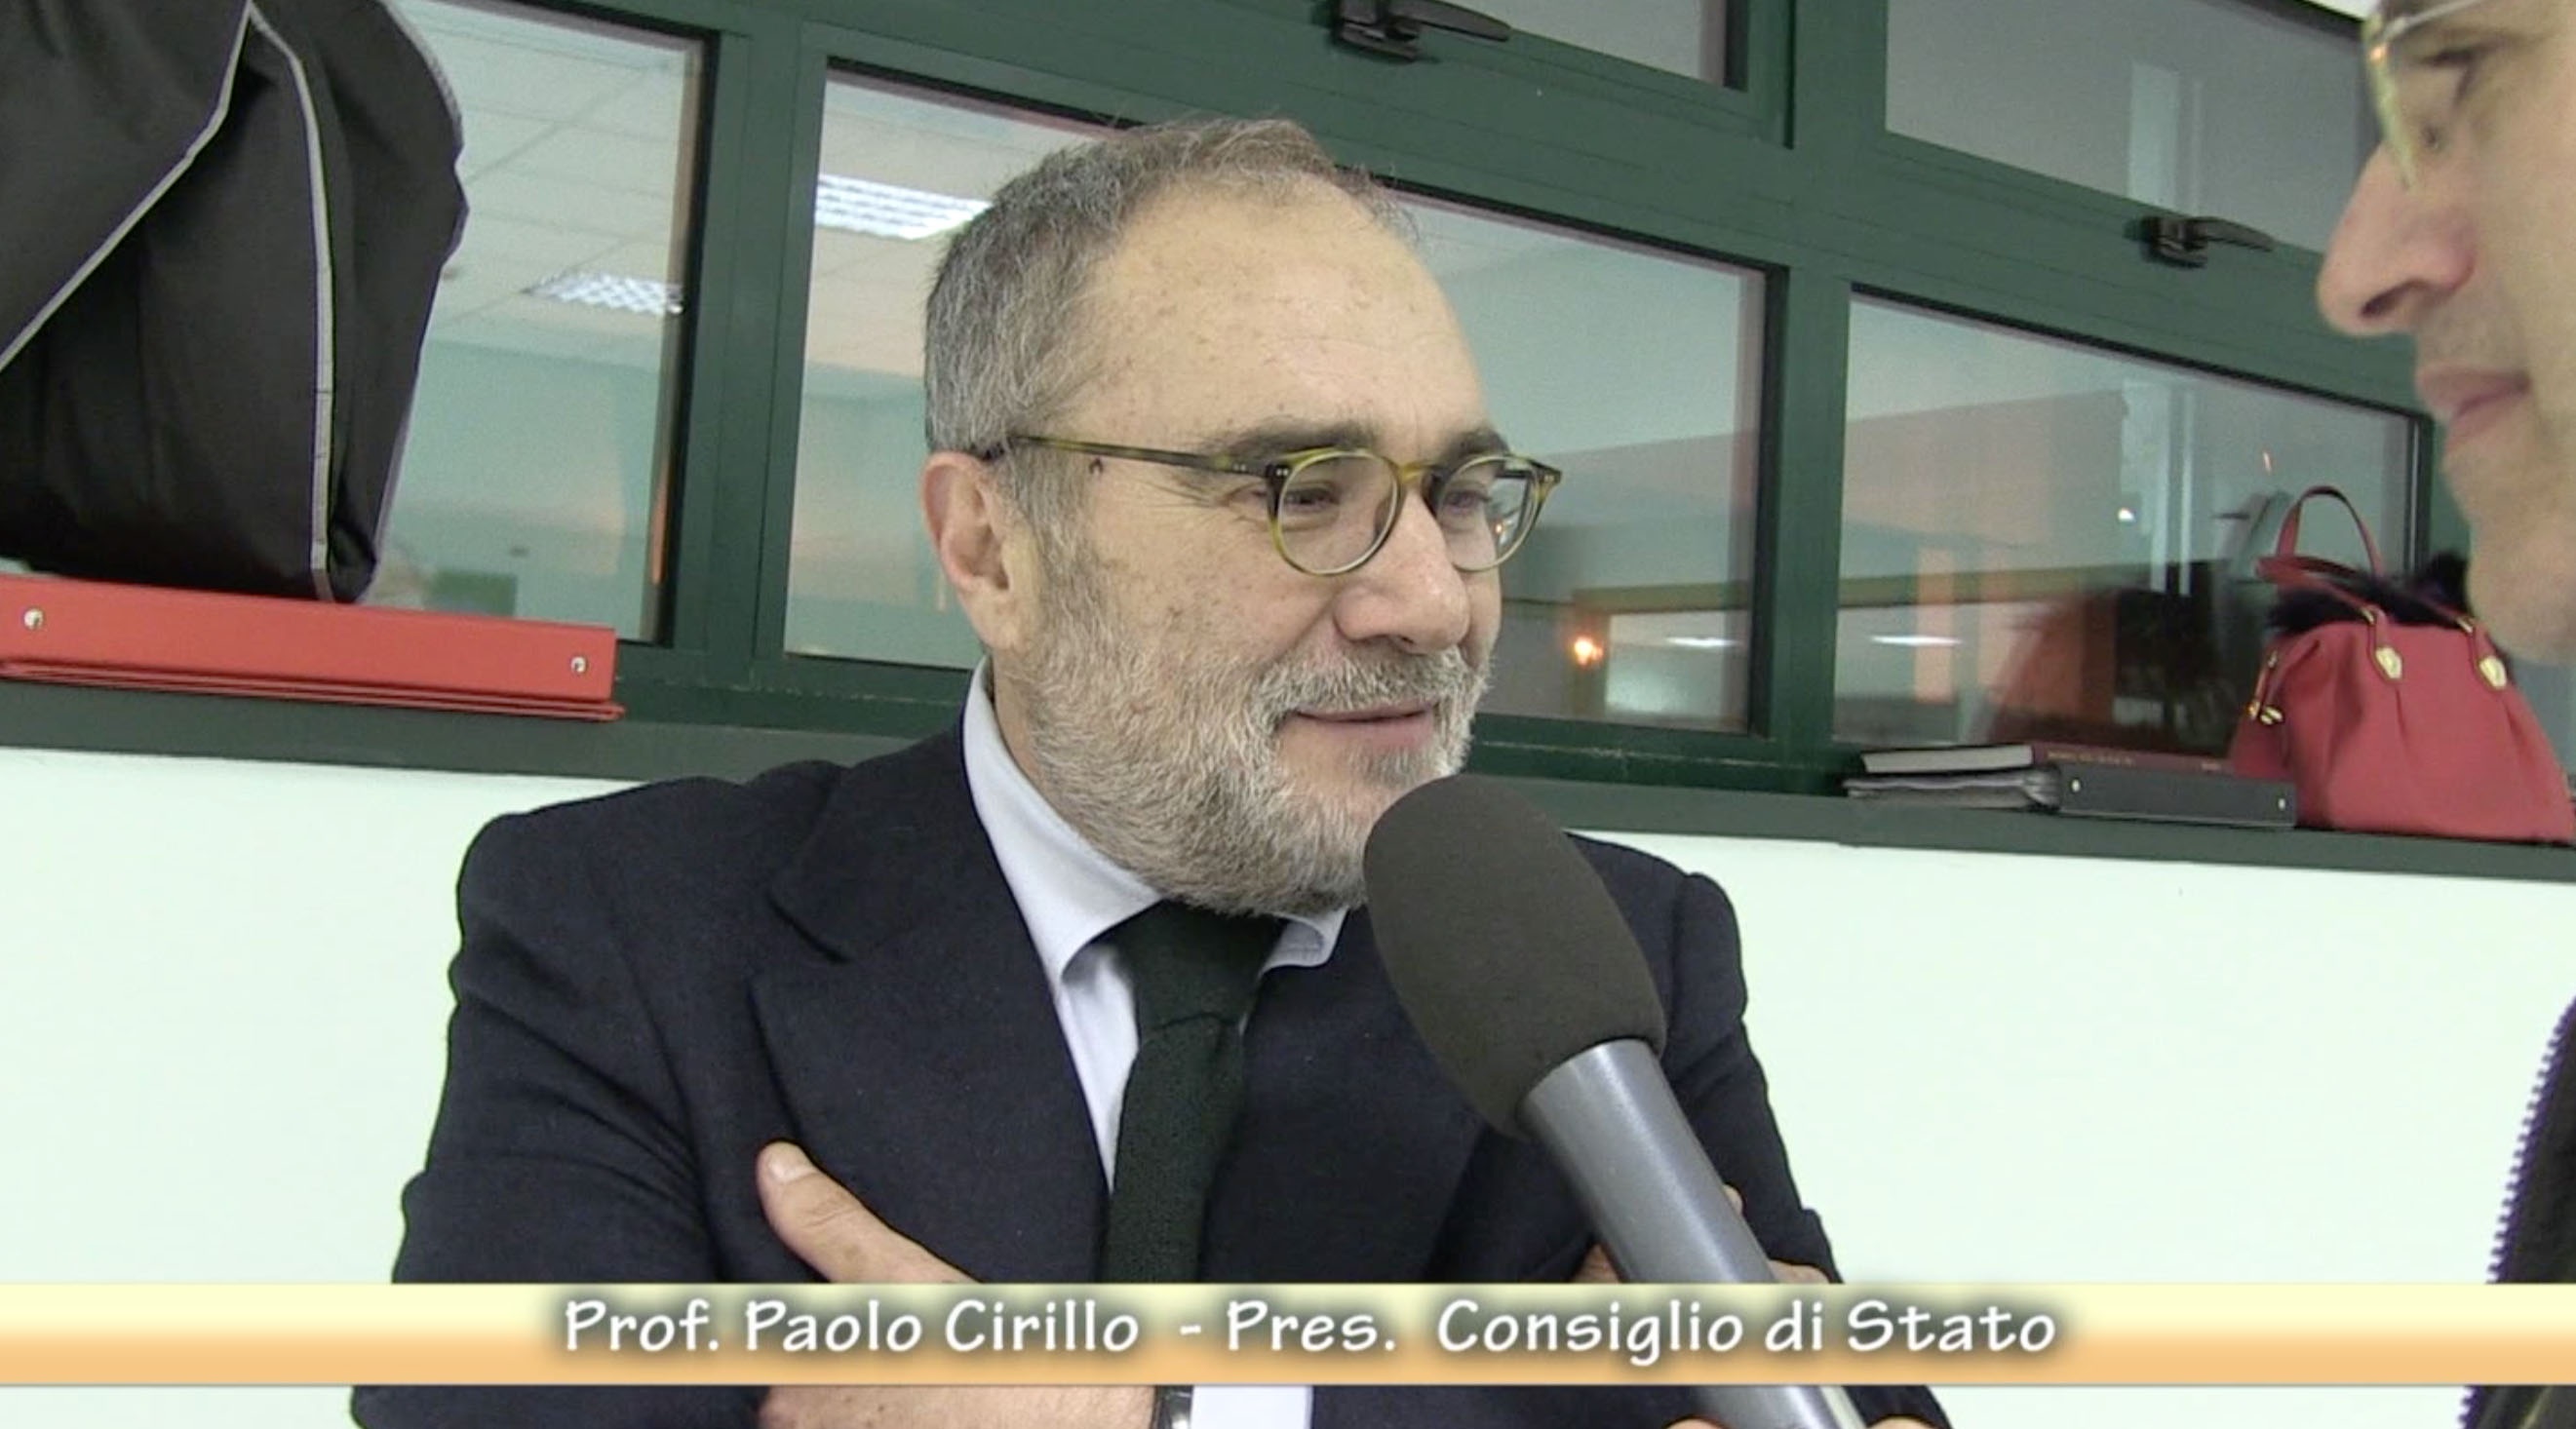 Paolo Cirillo - Pres. Consiglio di Stato